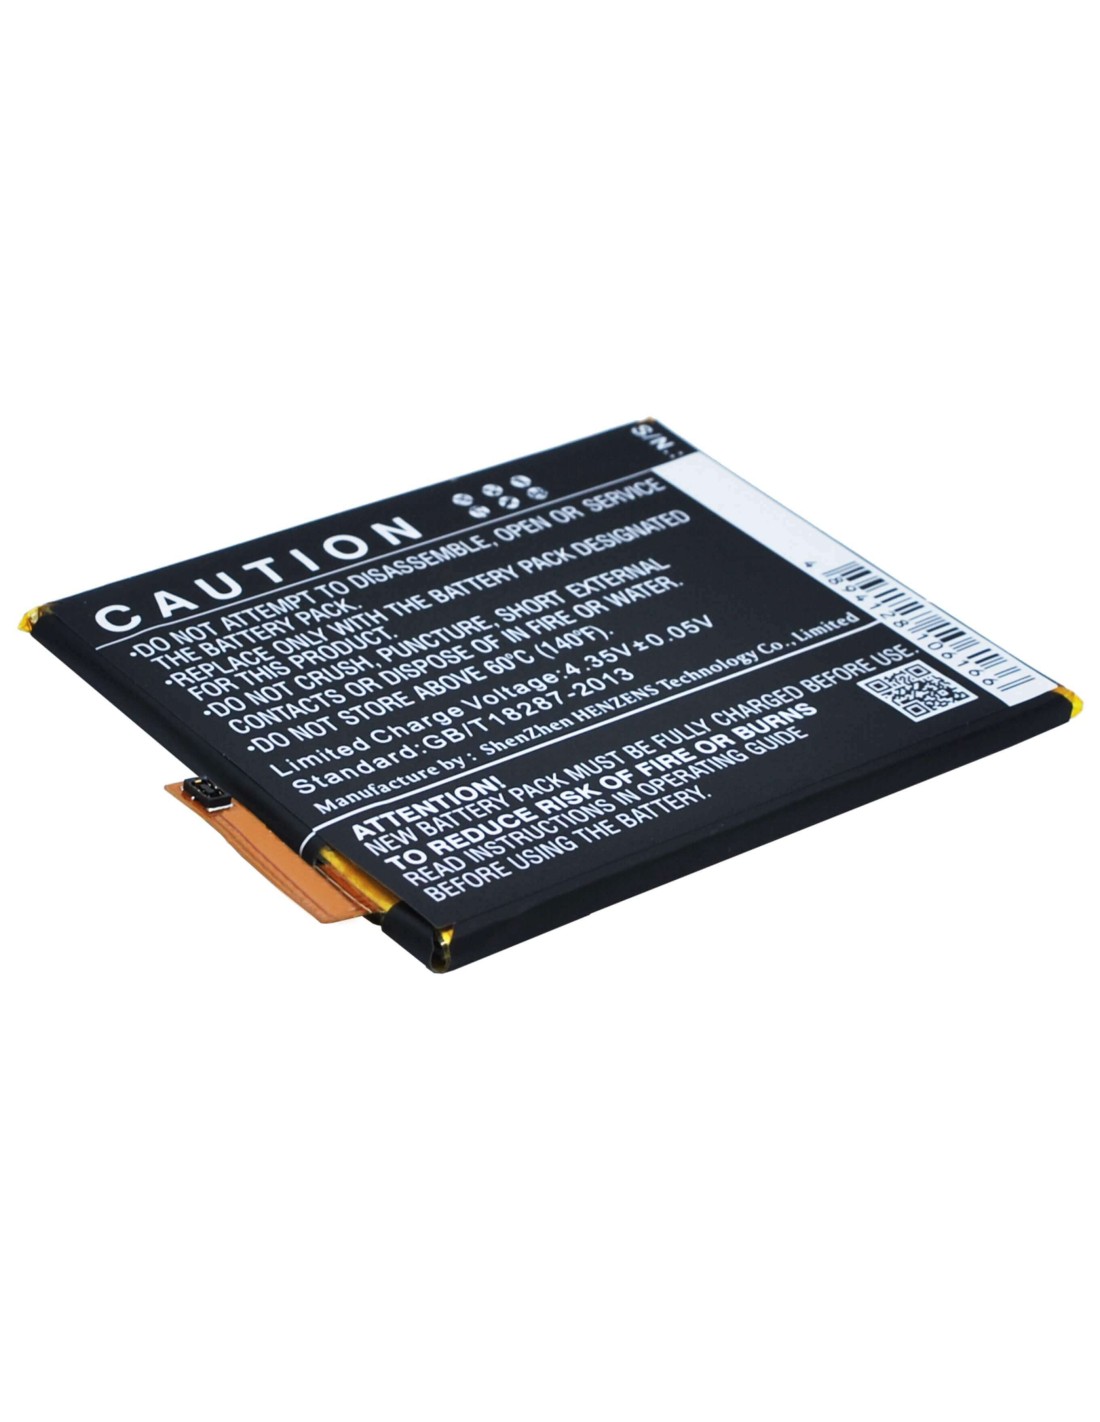 Battery for Sony Ericsson Xperia M4, Xperia M4 Aqua Dual LTE, E2363 3.8V, 2400mAh - 9.12Wh